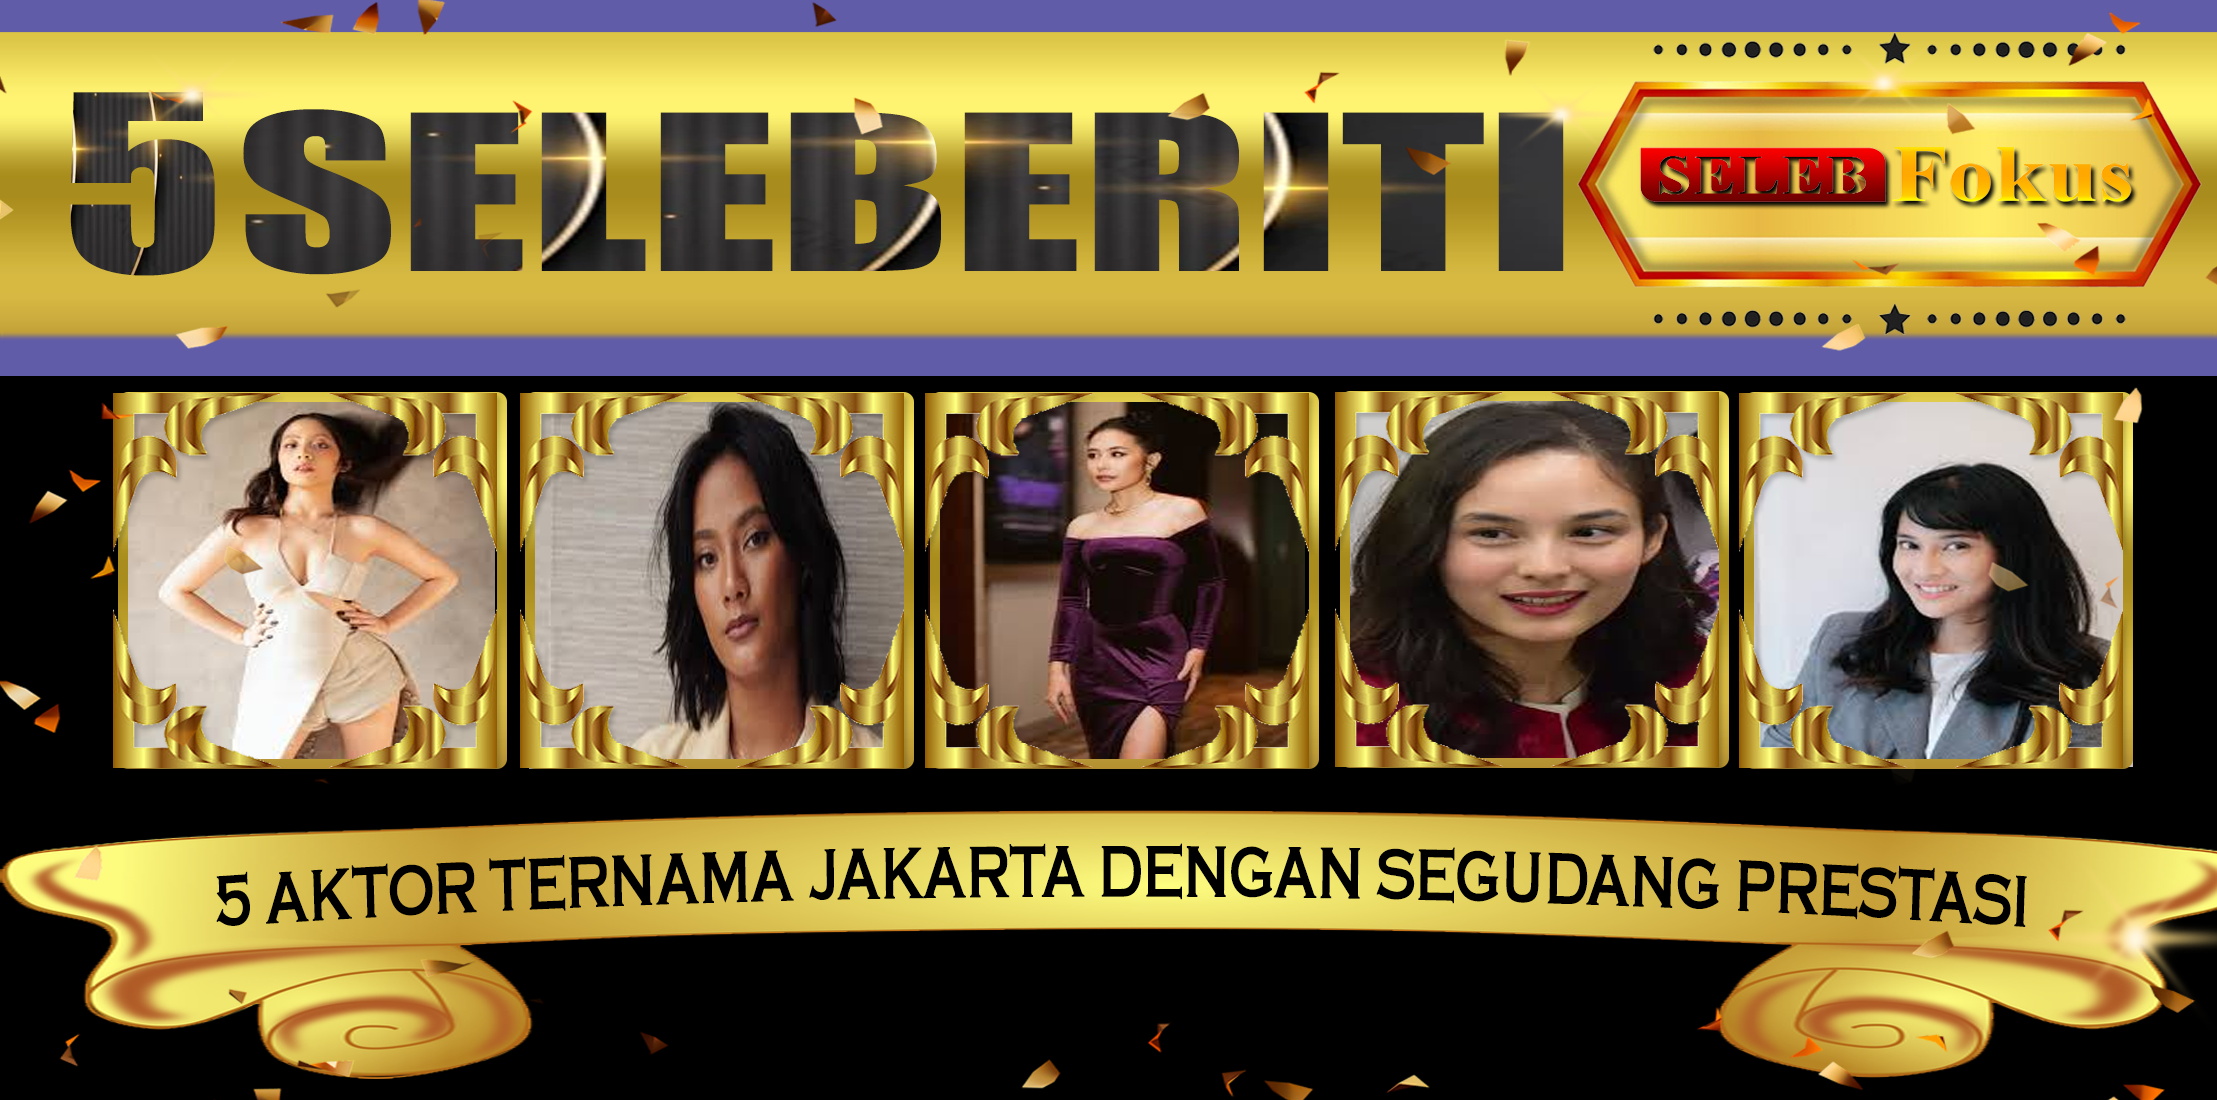 5 Selebriti Wanita Jakarta dengan Beragam Prestasi